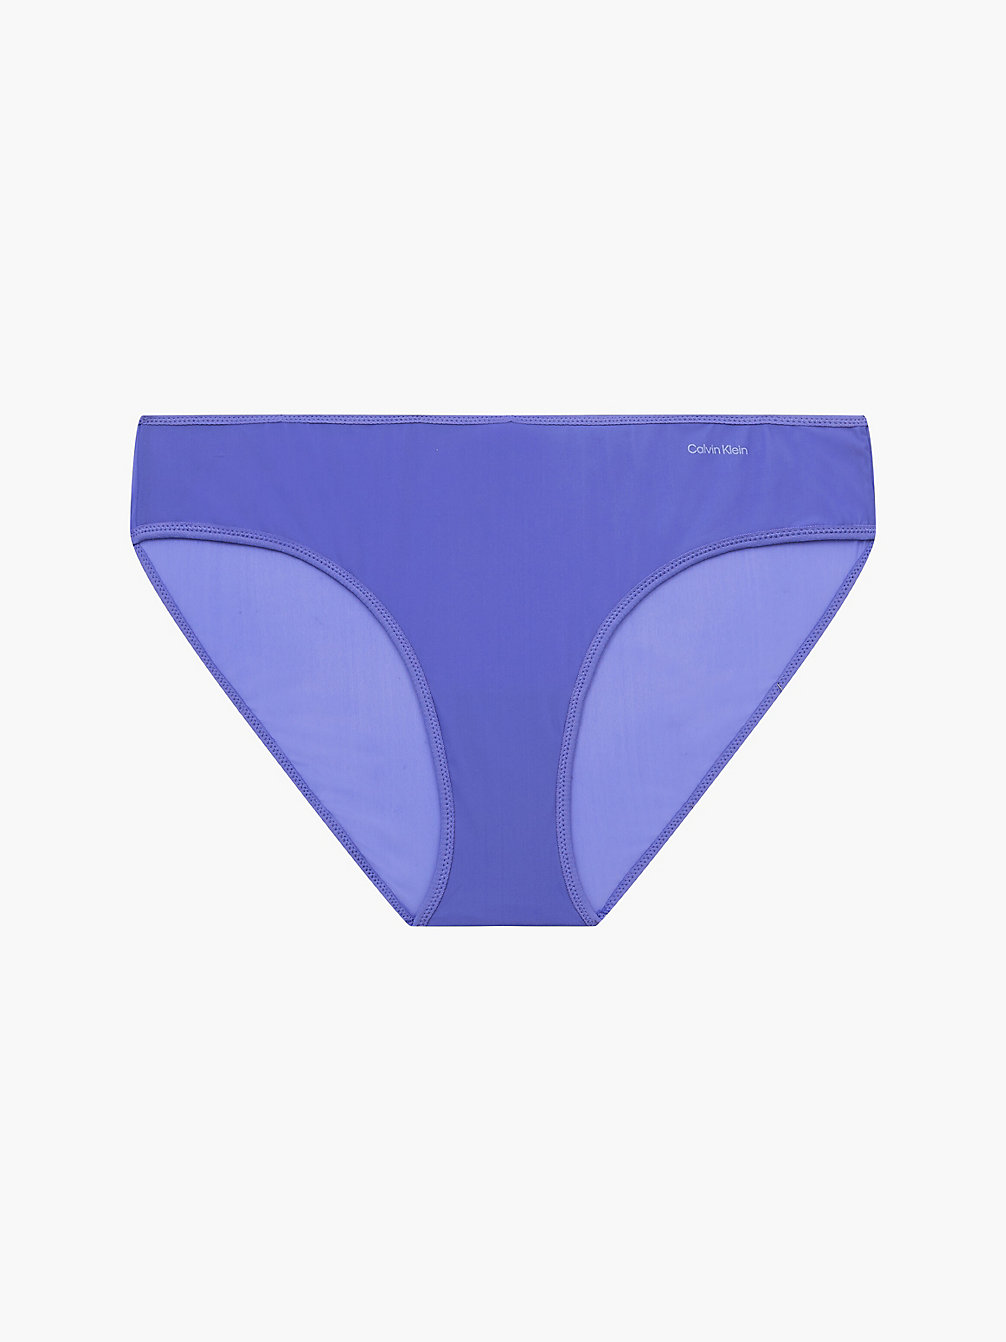 BLUE IRIS Bikini Brief - Sheer Marquisette undefined women Calvin Klein